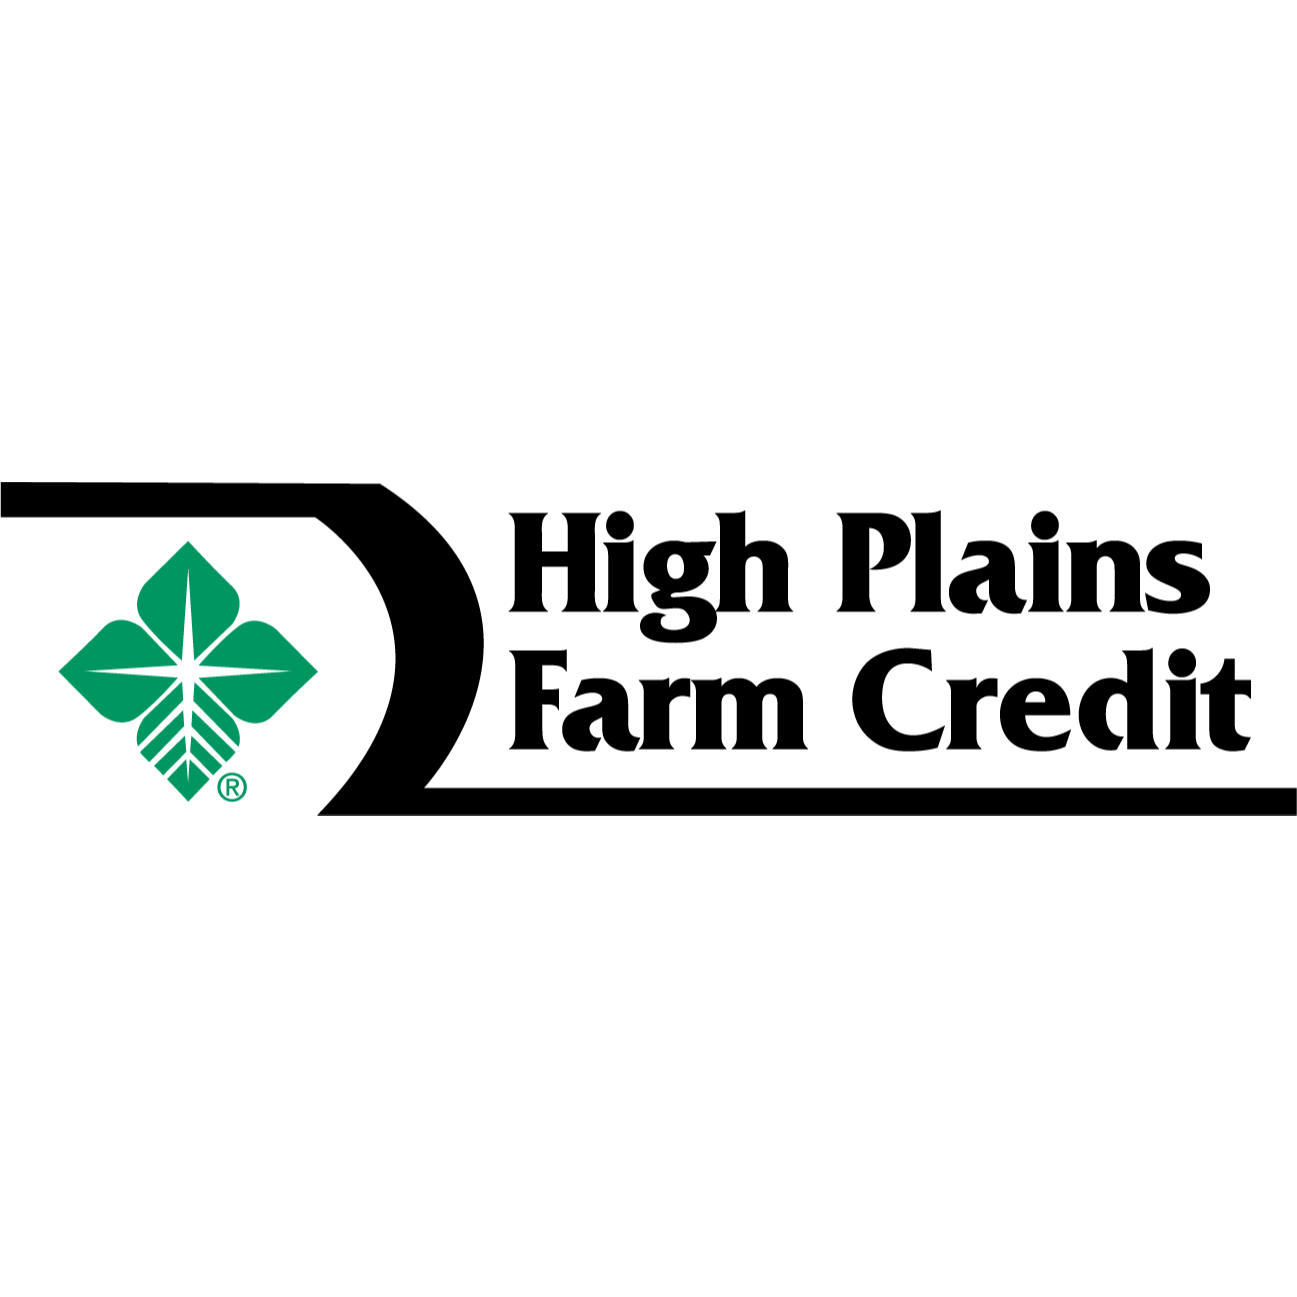 High Plains Farm Credit 605 Main St, Larned Kansas 67550